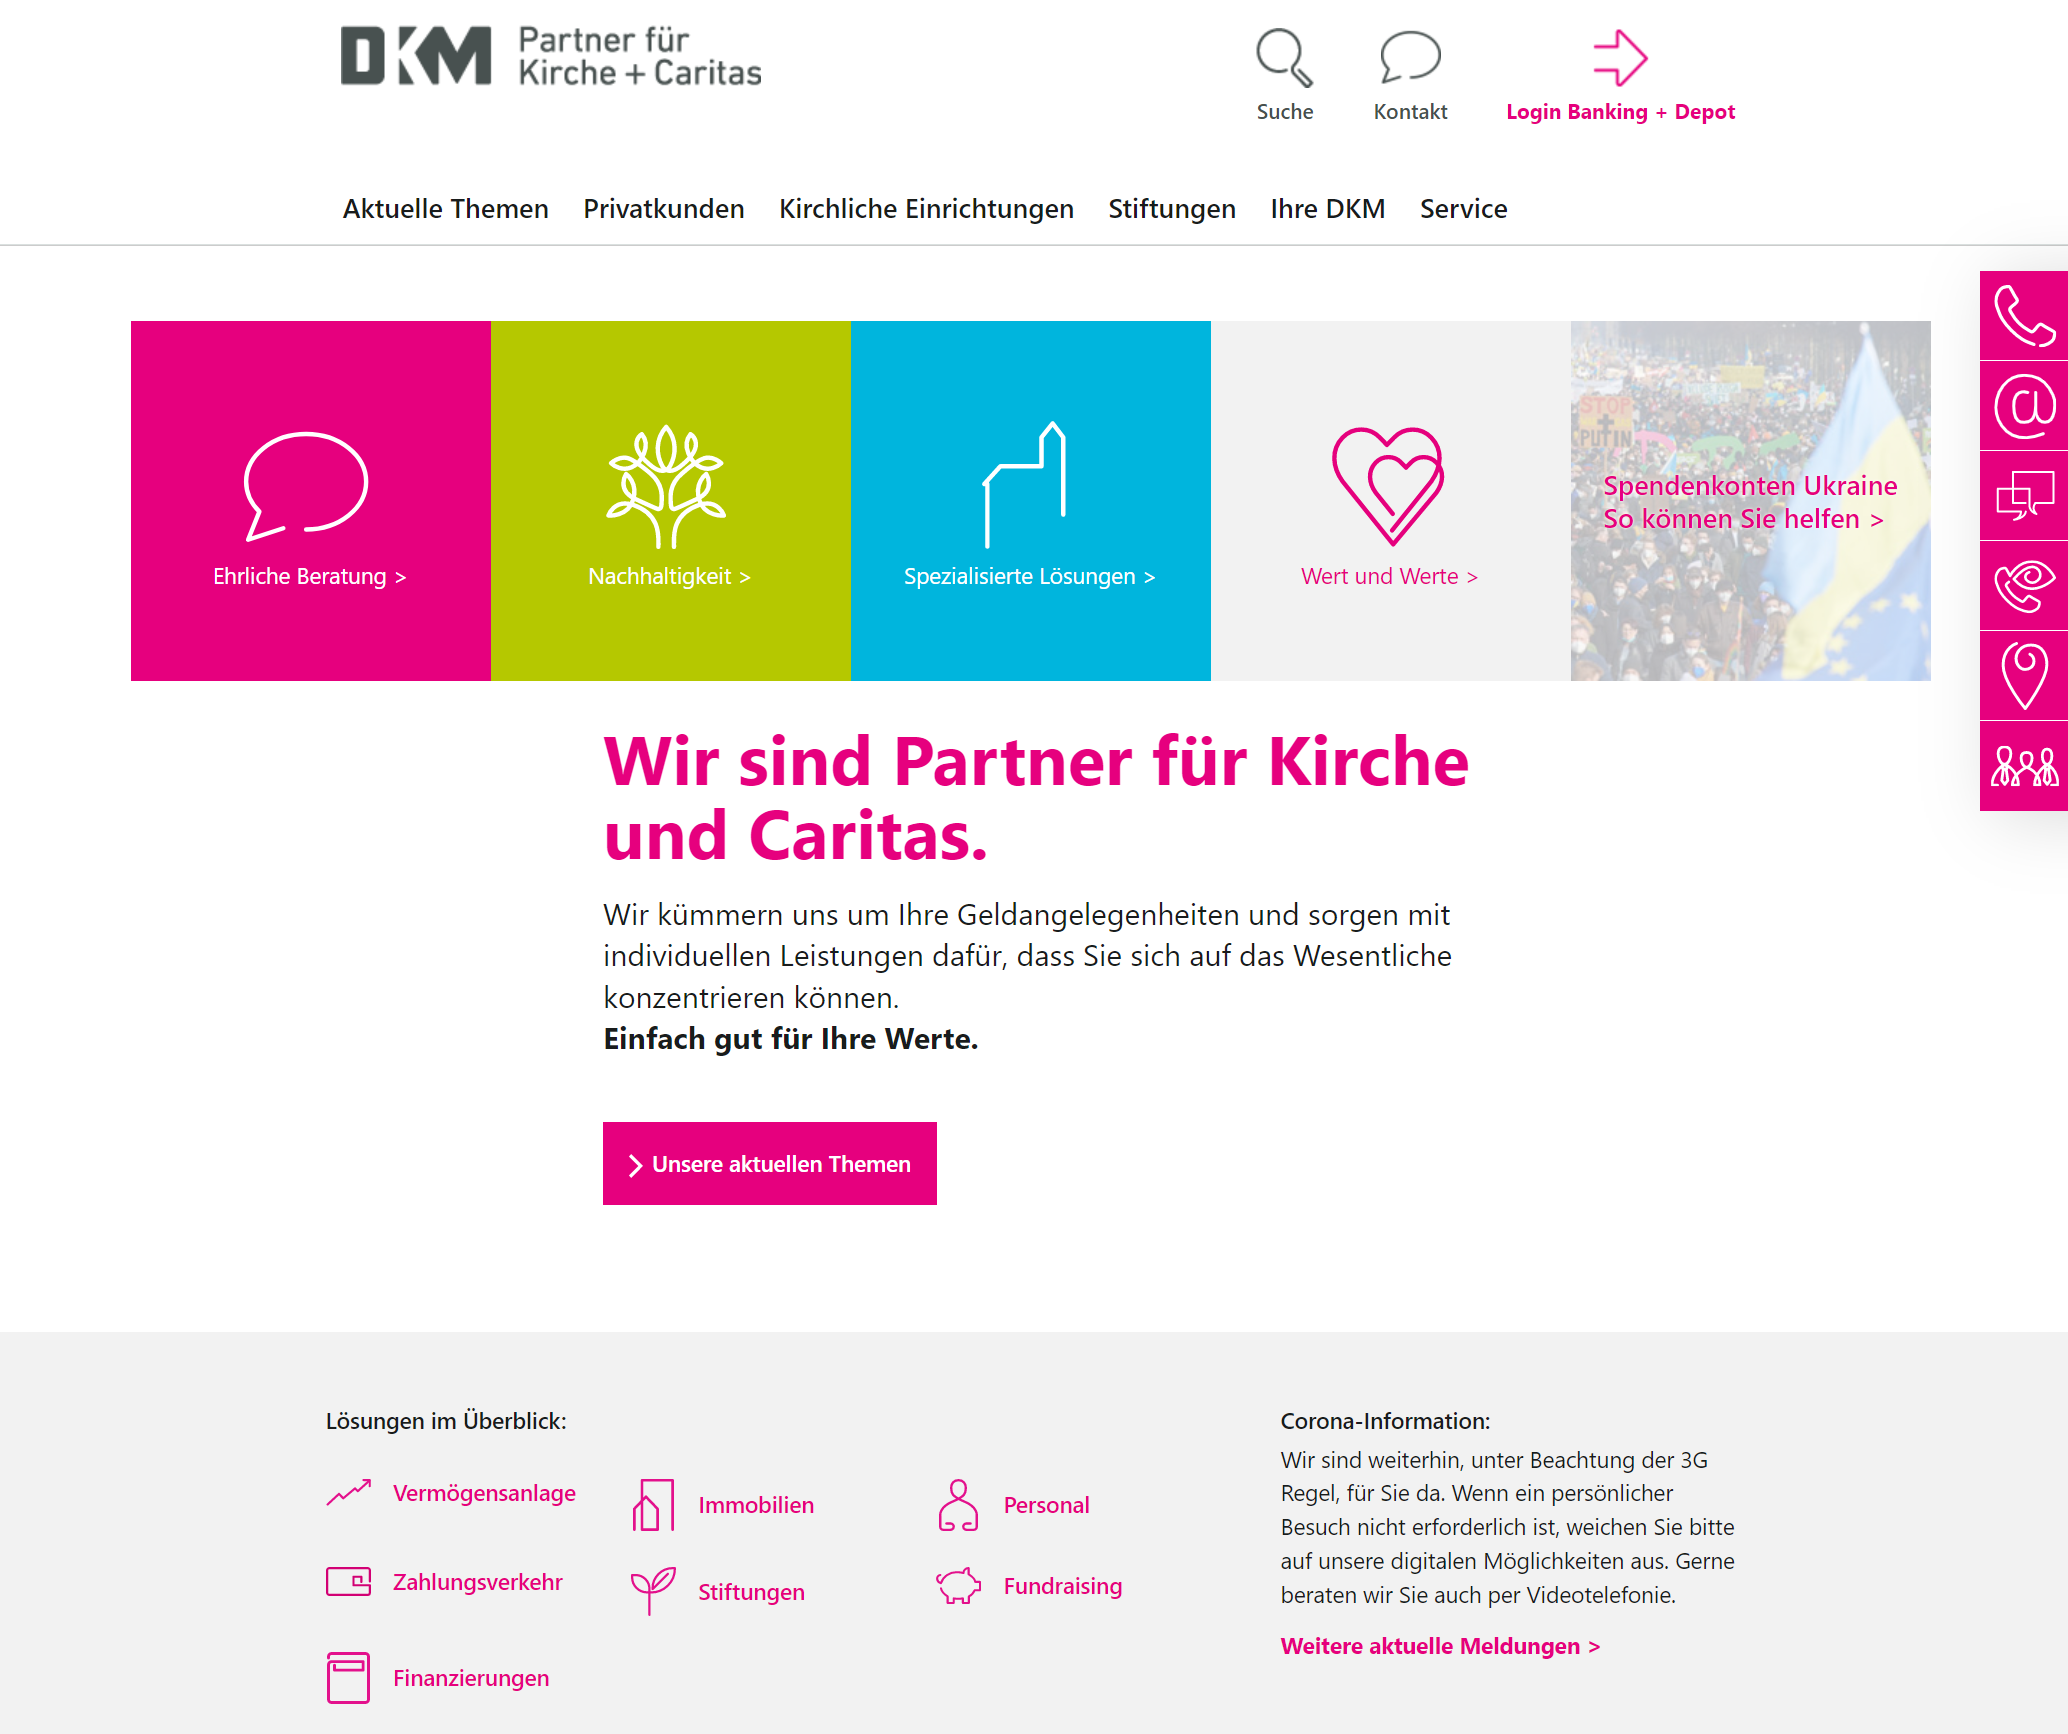 DKM Partner für Kirche + Caritas - Startseite